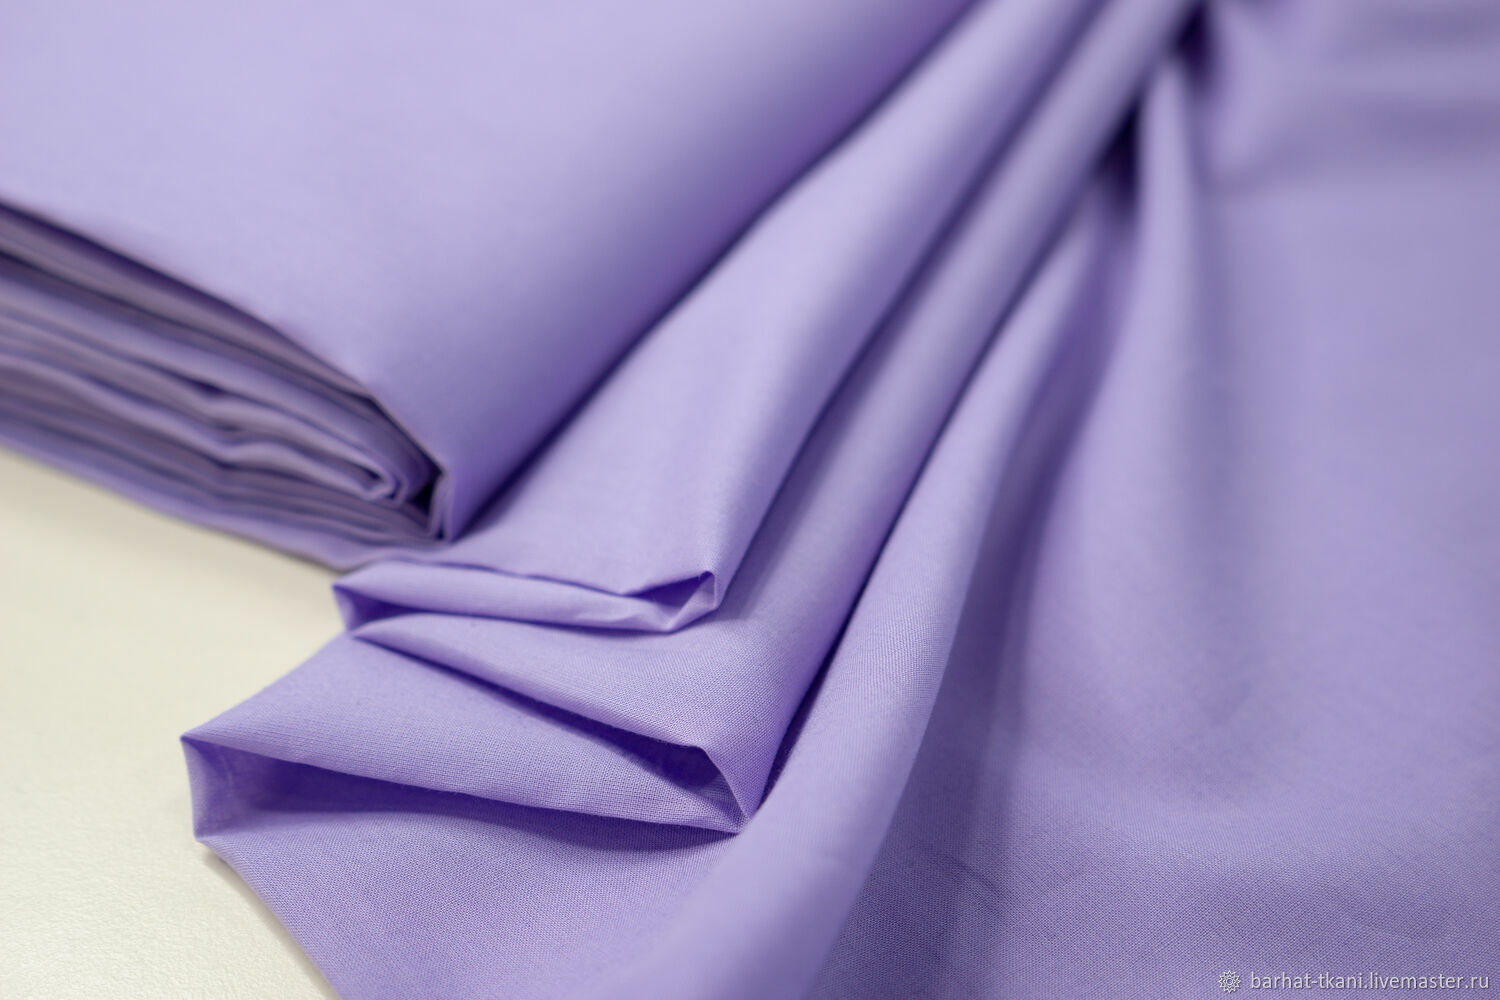 Сборка 1.19 fabric. Ткань хлопок фиолетовый. Сиреневый хлопок. Хлопчатобумажные ткани фиолетовые. Фиолетовая ткань.